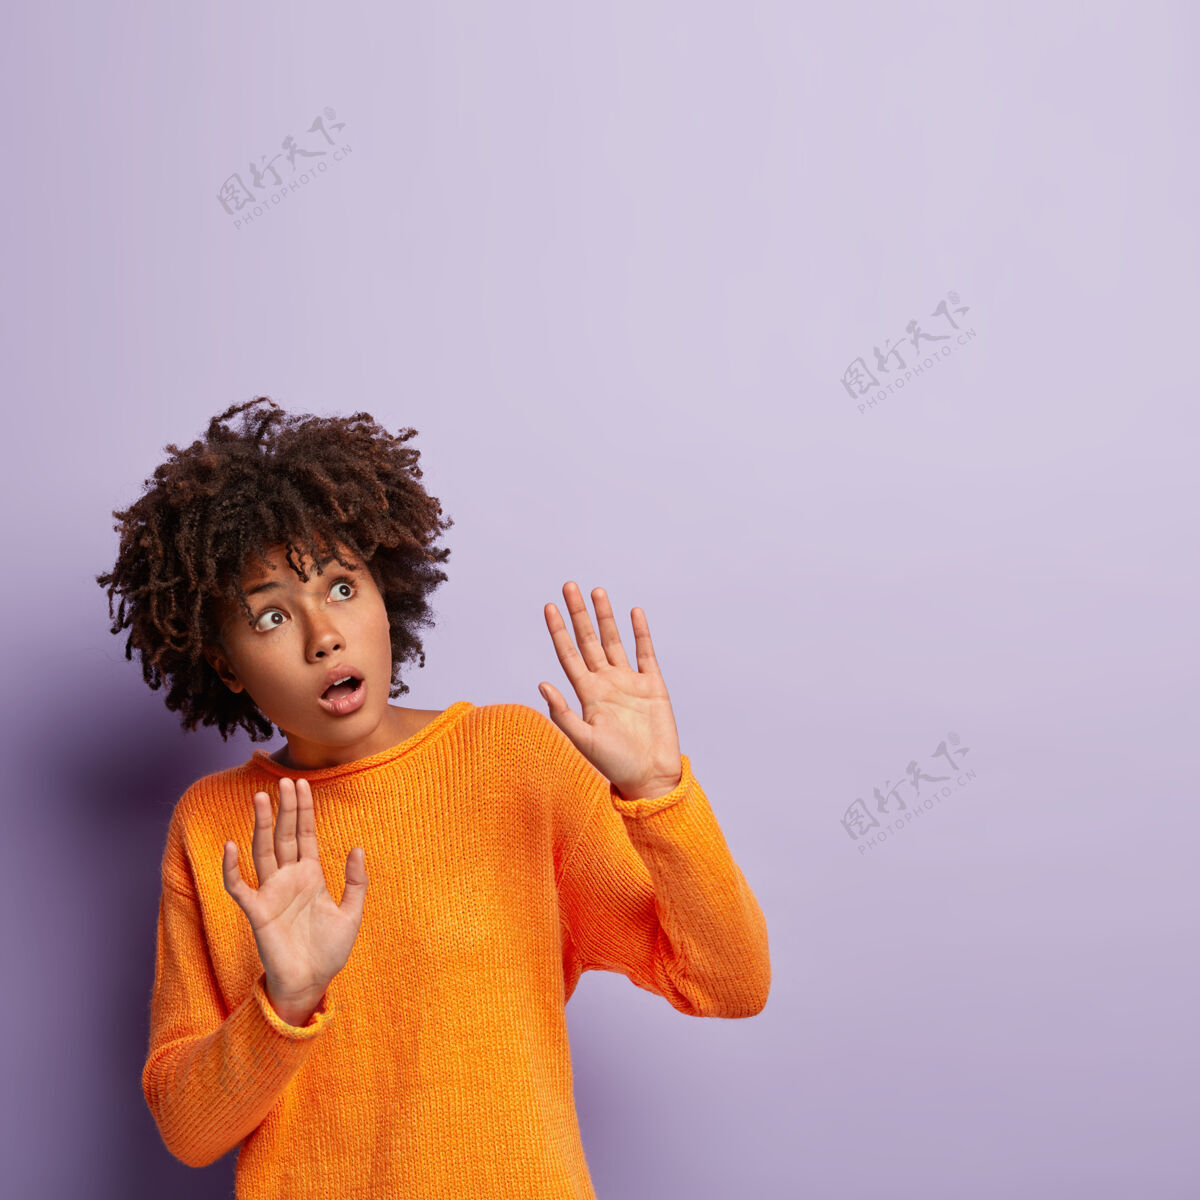 害怕可怕的黑皮肤女性保持手掌向前 试图保护自己 集中在上面 害怕可怕的事情 穿着橙色套头衫 孤立在紫色的墙壁哦不 有东西掉下来了民族惊讶休闲